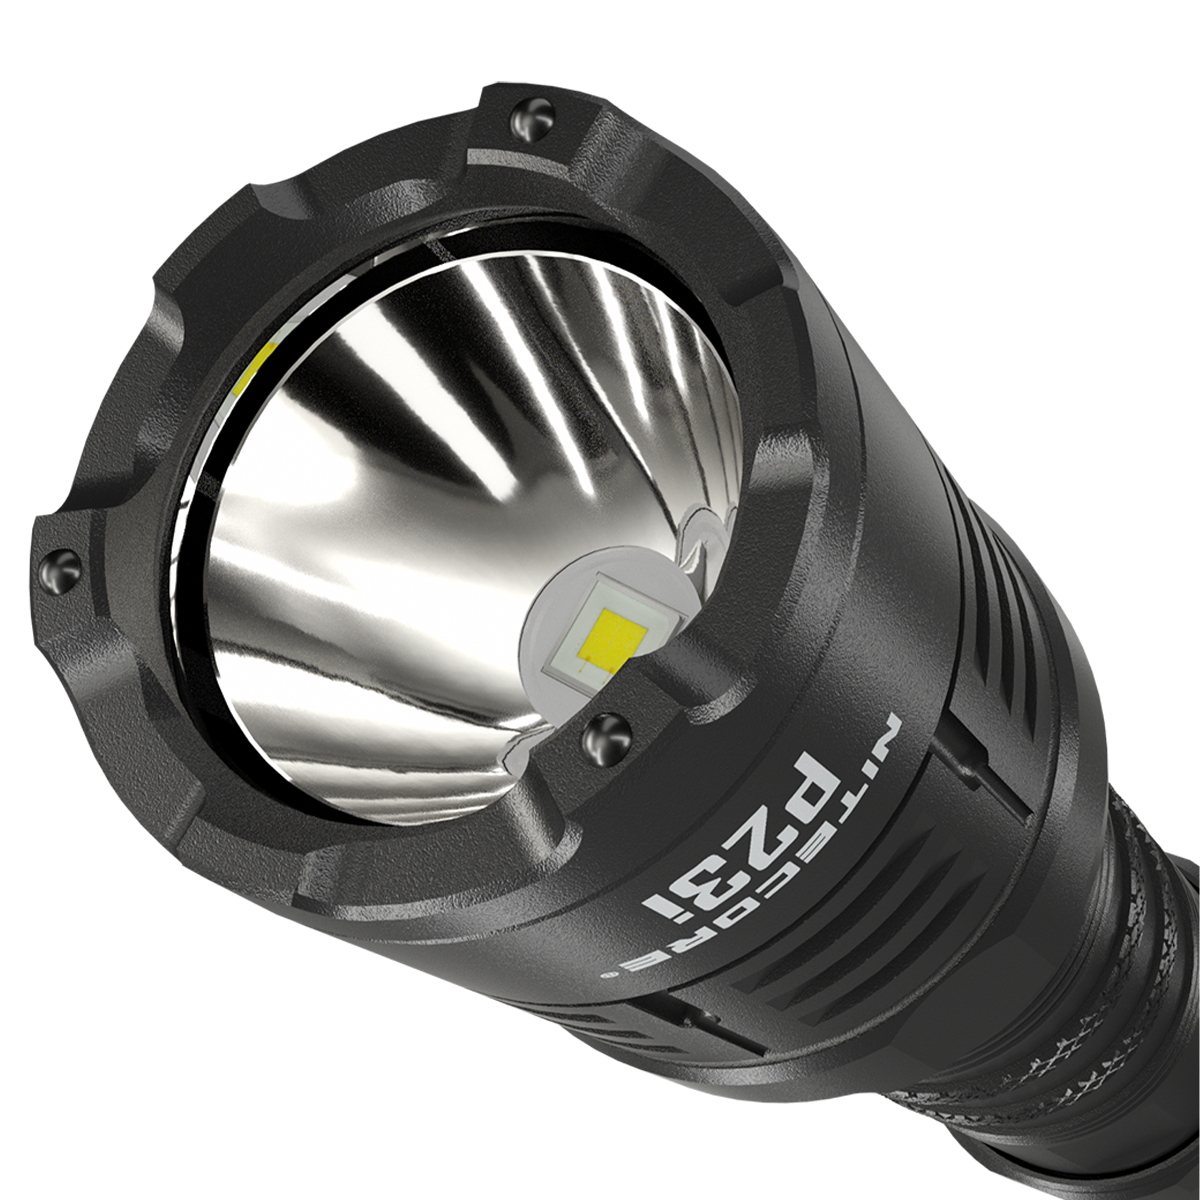 nitecore-p23i-3000-lumens-i-generation-long-range-21700-tactical-flashlight-11.png